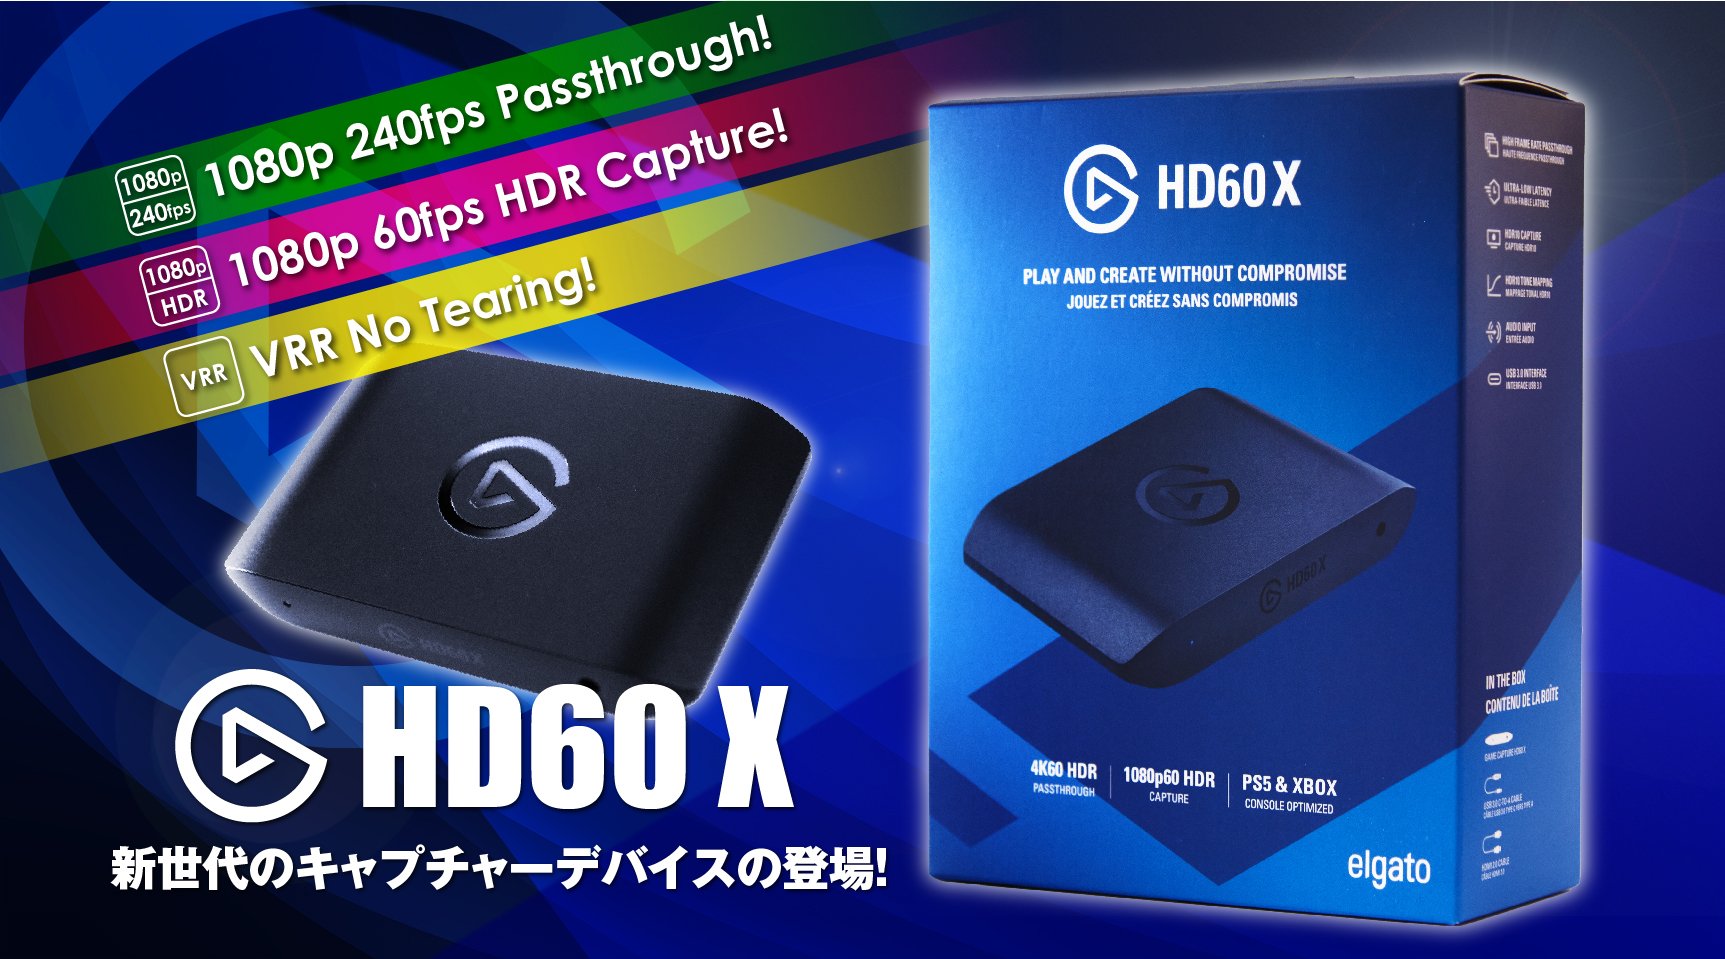 Elgato ゲームキャプチャ HD60 S+ 1080p/60fps 4K60